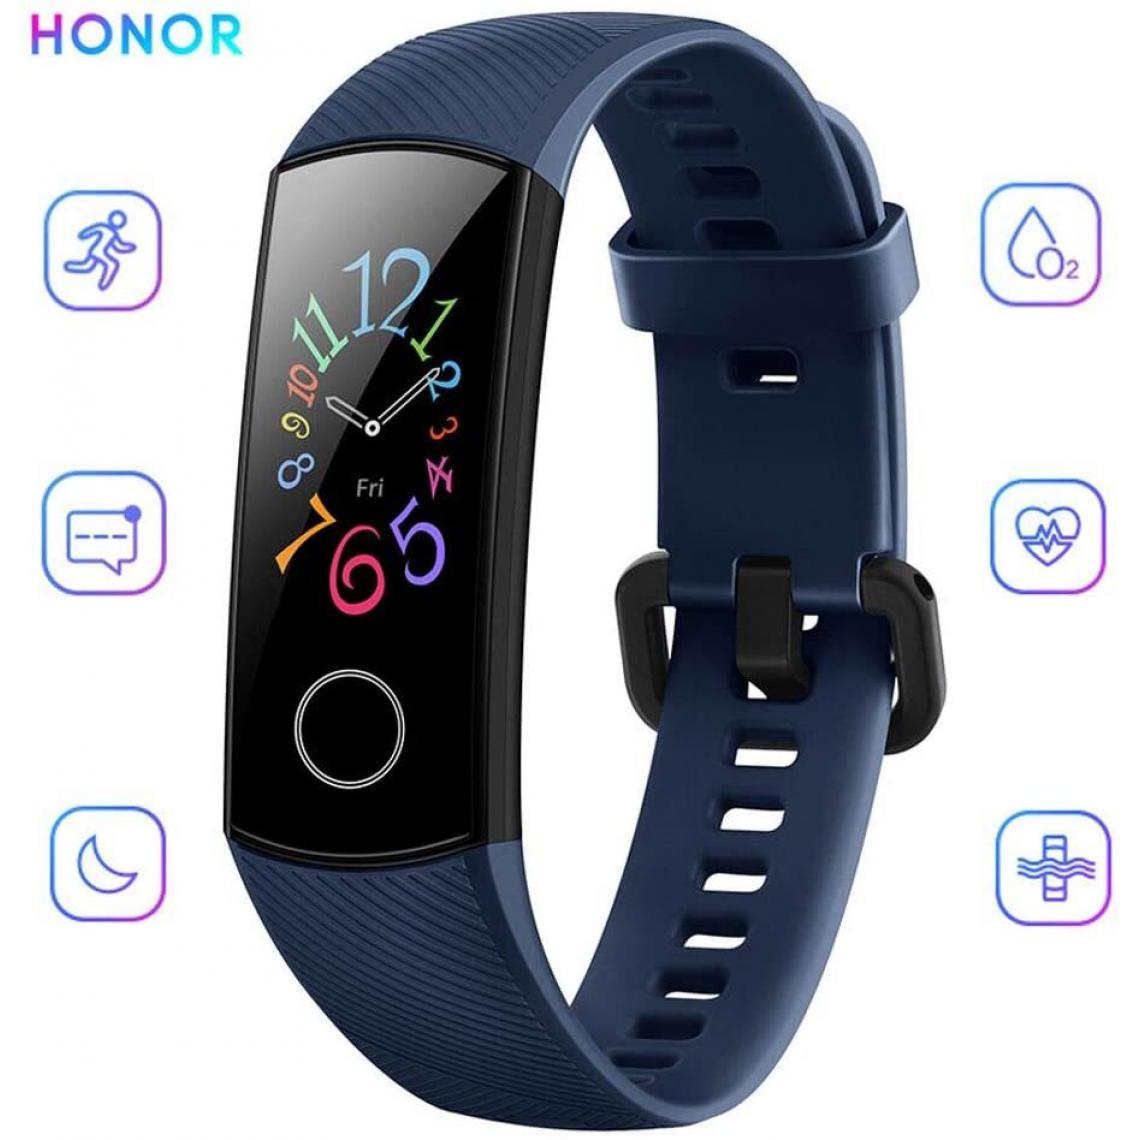 Chrono - Bracelet Connectée HONOR Band 5 pour Femme Homme Avec Etanche IP68 Sommeil Calorie pour Android iOS-Bleu - Montre connectée